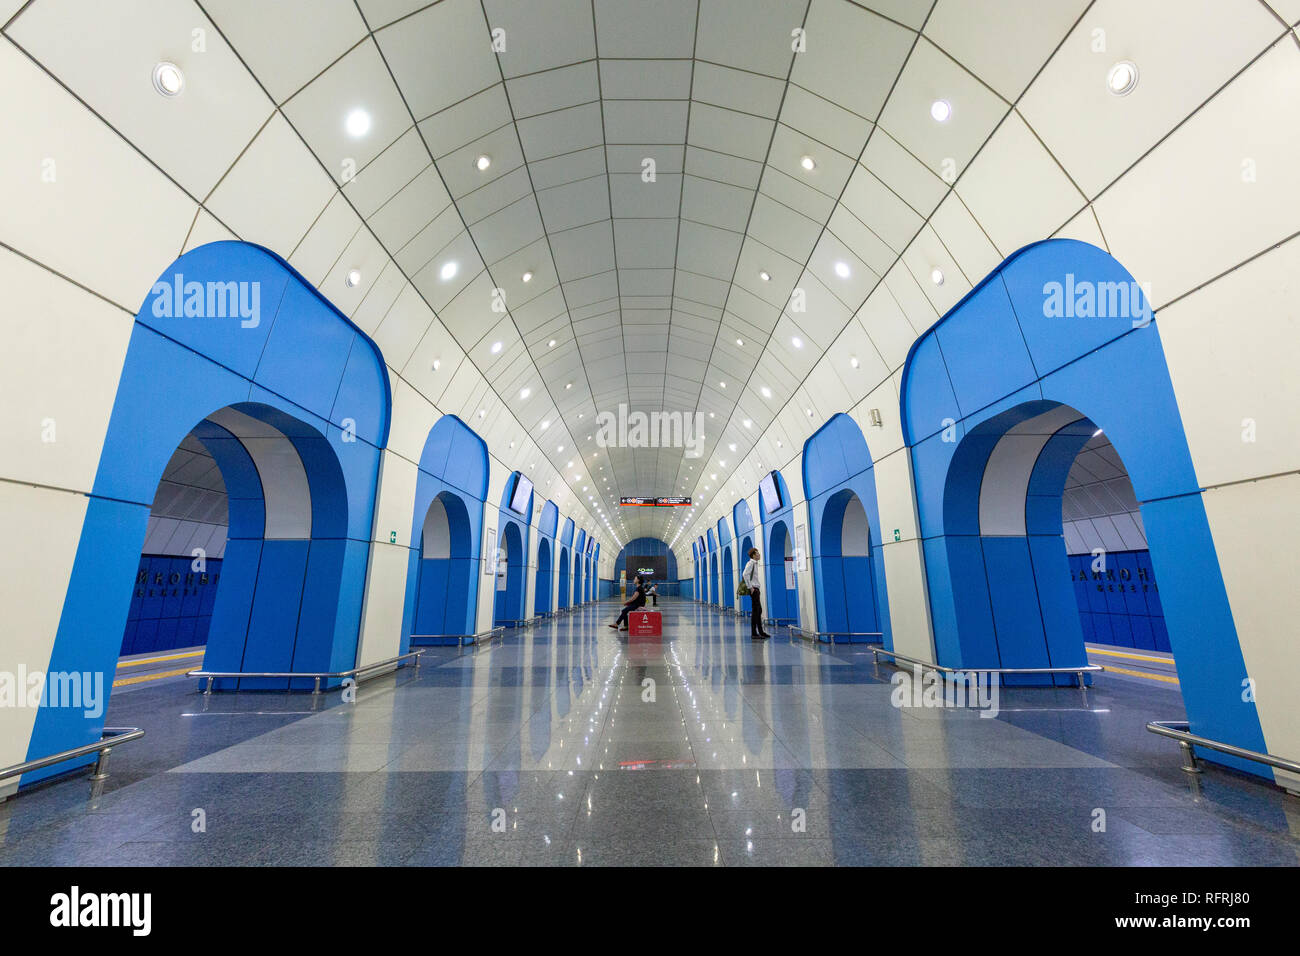 La station de métro de Baïkonour, à Almaty, Kazakhstan. La station de métro est nommé d'après le centre spatial de Baïkonour dans Kazkahstan Banque D'Images